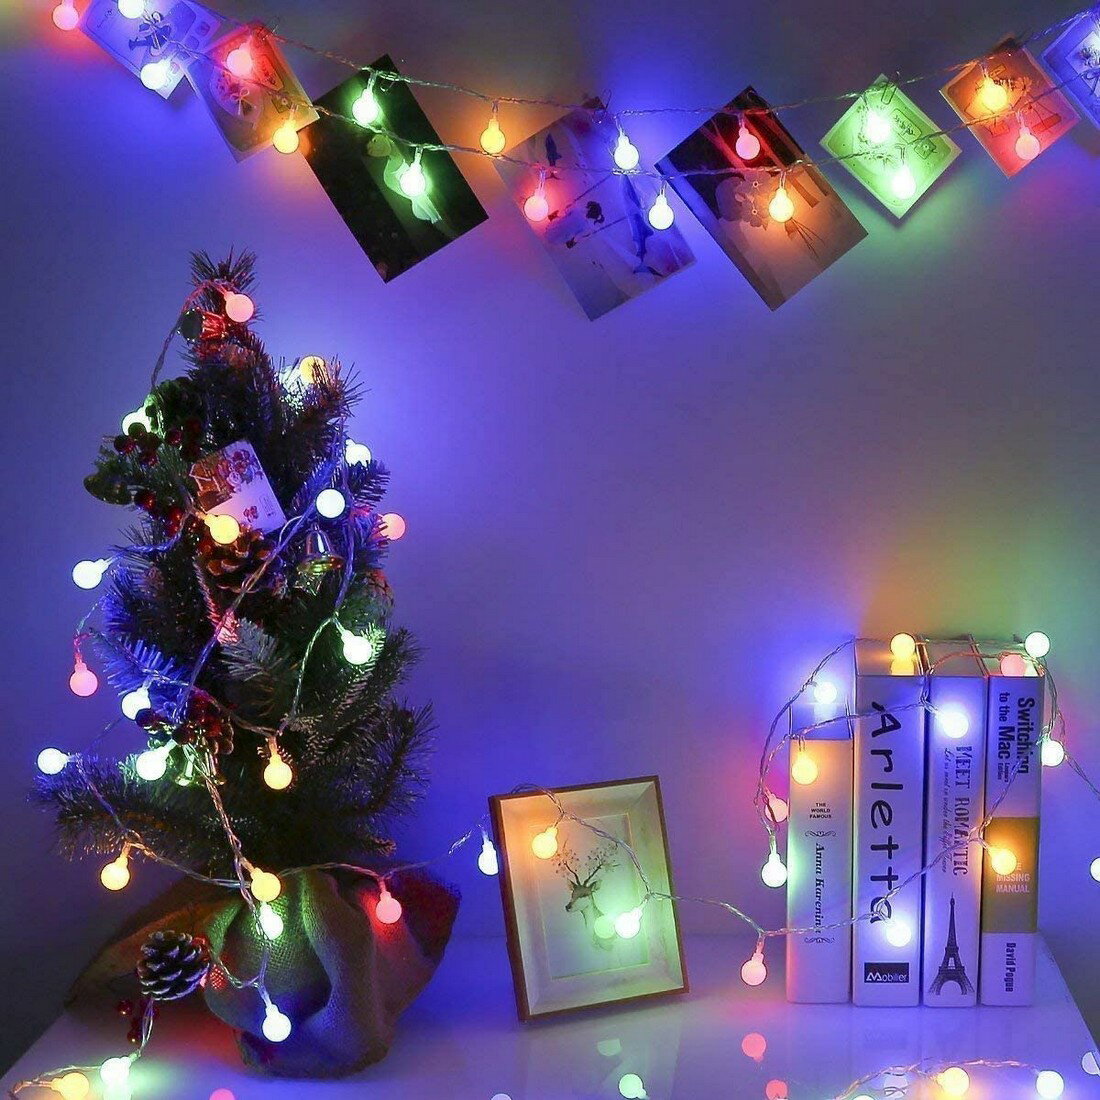 LEDストリングライト ガーランド 5m 50個LED リモコンUSB式 電飾 フェアリーライト 装飾ライト クリスマスツリー ライト 防雨型 レインボー 3